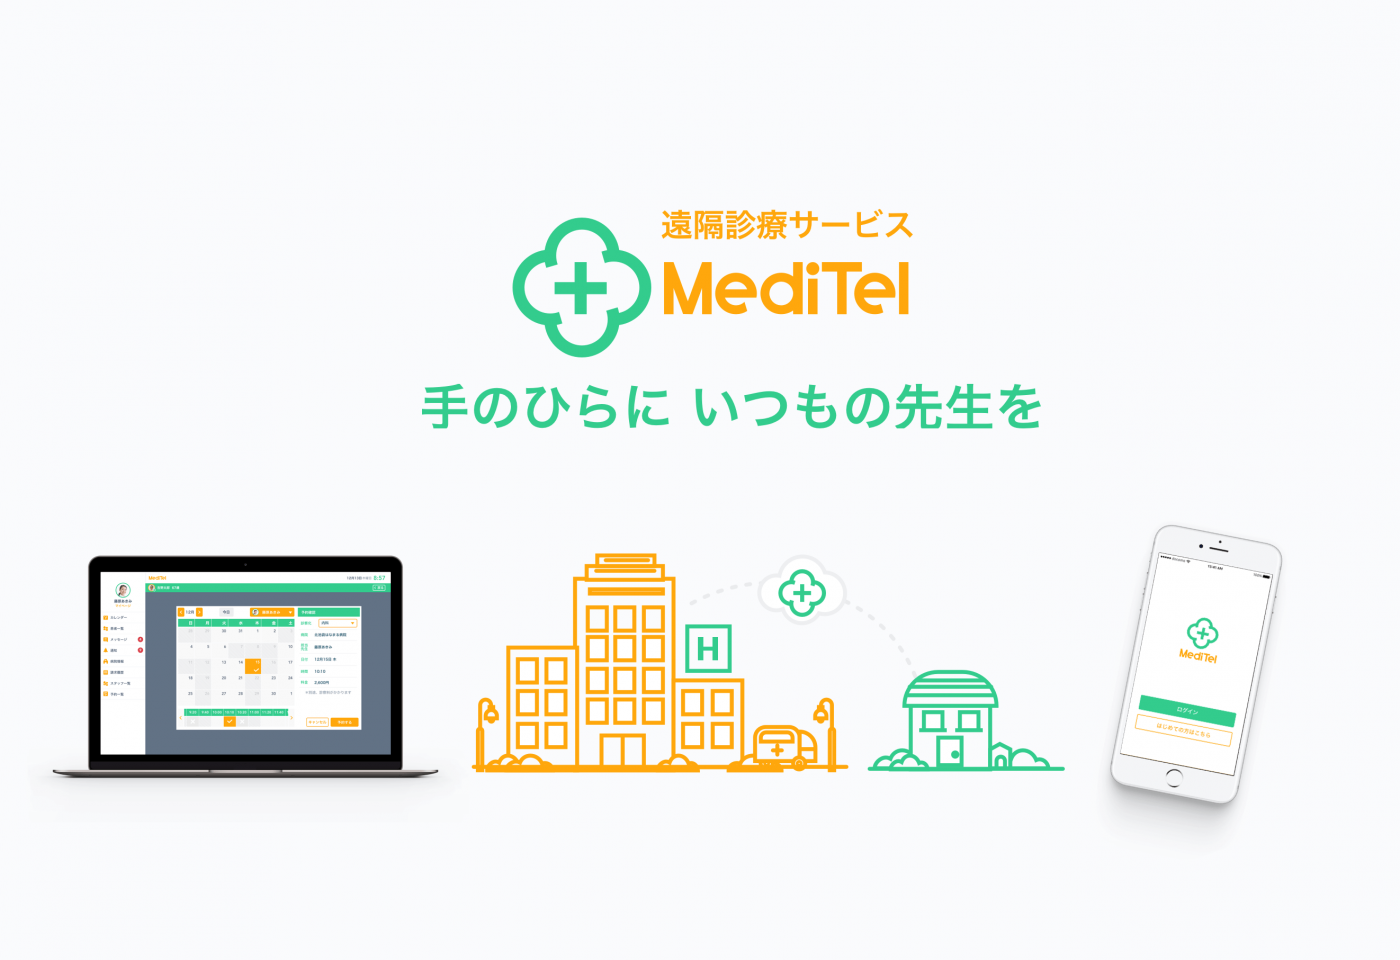 ドコモ・テックファーム遠隔診療サービス「MediTel」の提供11月開始